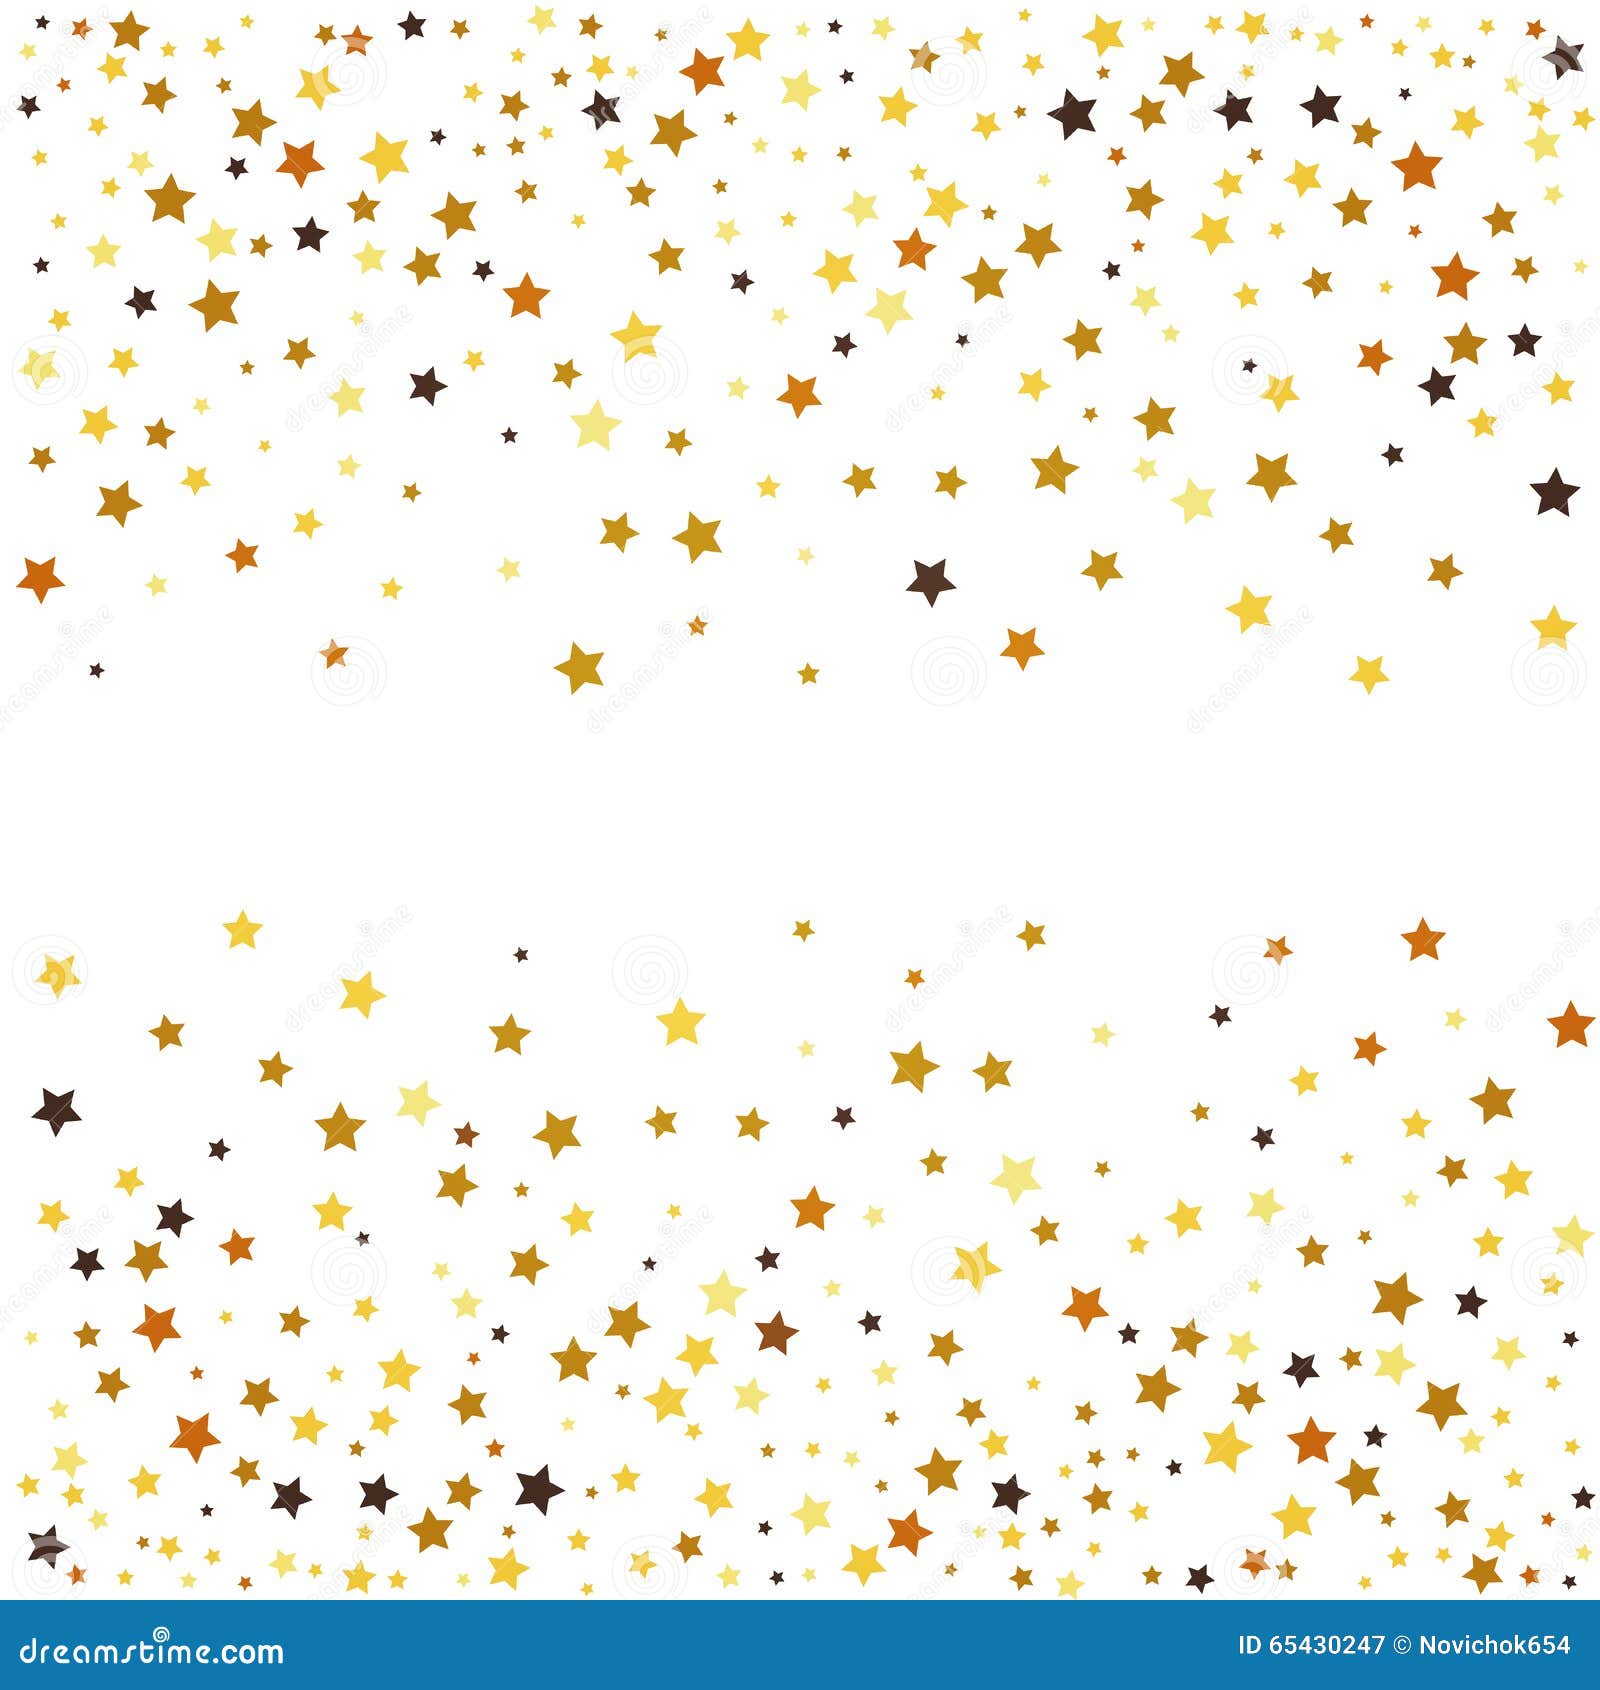 Hình minh họa ngôi sao vàng trên nền trắng - 38,270 hình ảnh...: Khám phá kho tàng hình ảnh về những ngôi sao vàng rực rỡ trên nền trắng sang trọng. Hàng chục nghìn hình ảnh đẹp và chất lượng sẵn sàng để bạn sử dụng trong mọi dự án sáng tạo.